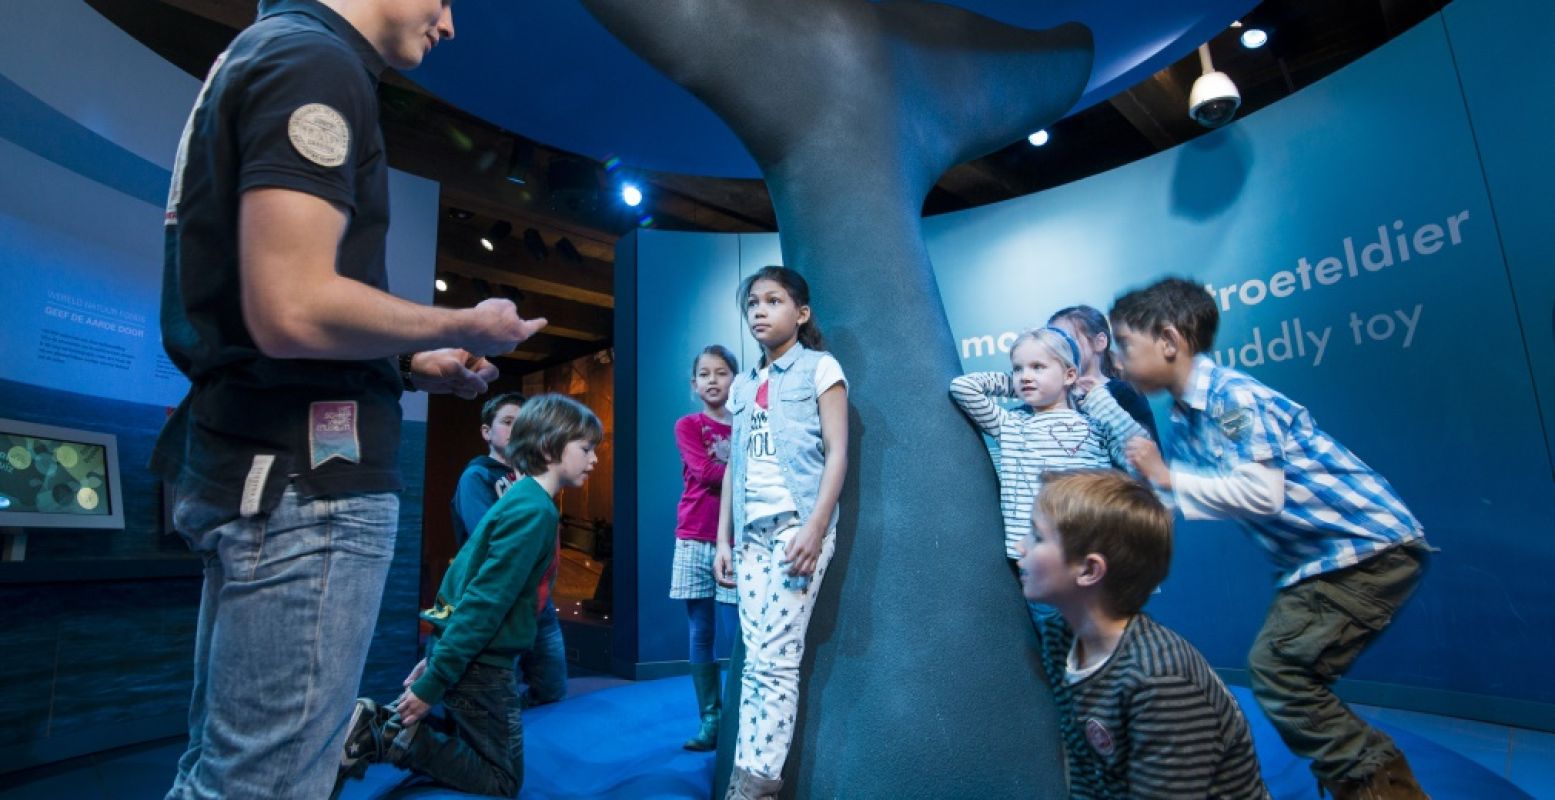 Leer meer over de walvis in Het Scheepvaartmuseum. Foto: Het Scheepvaartmuseum Amsterdam / persbericht